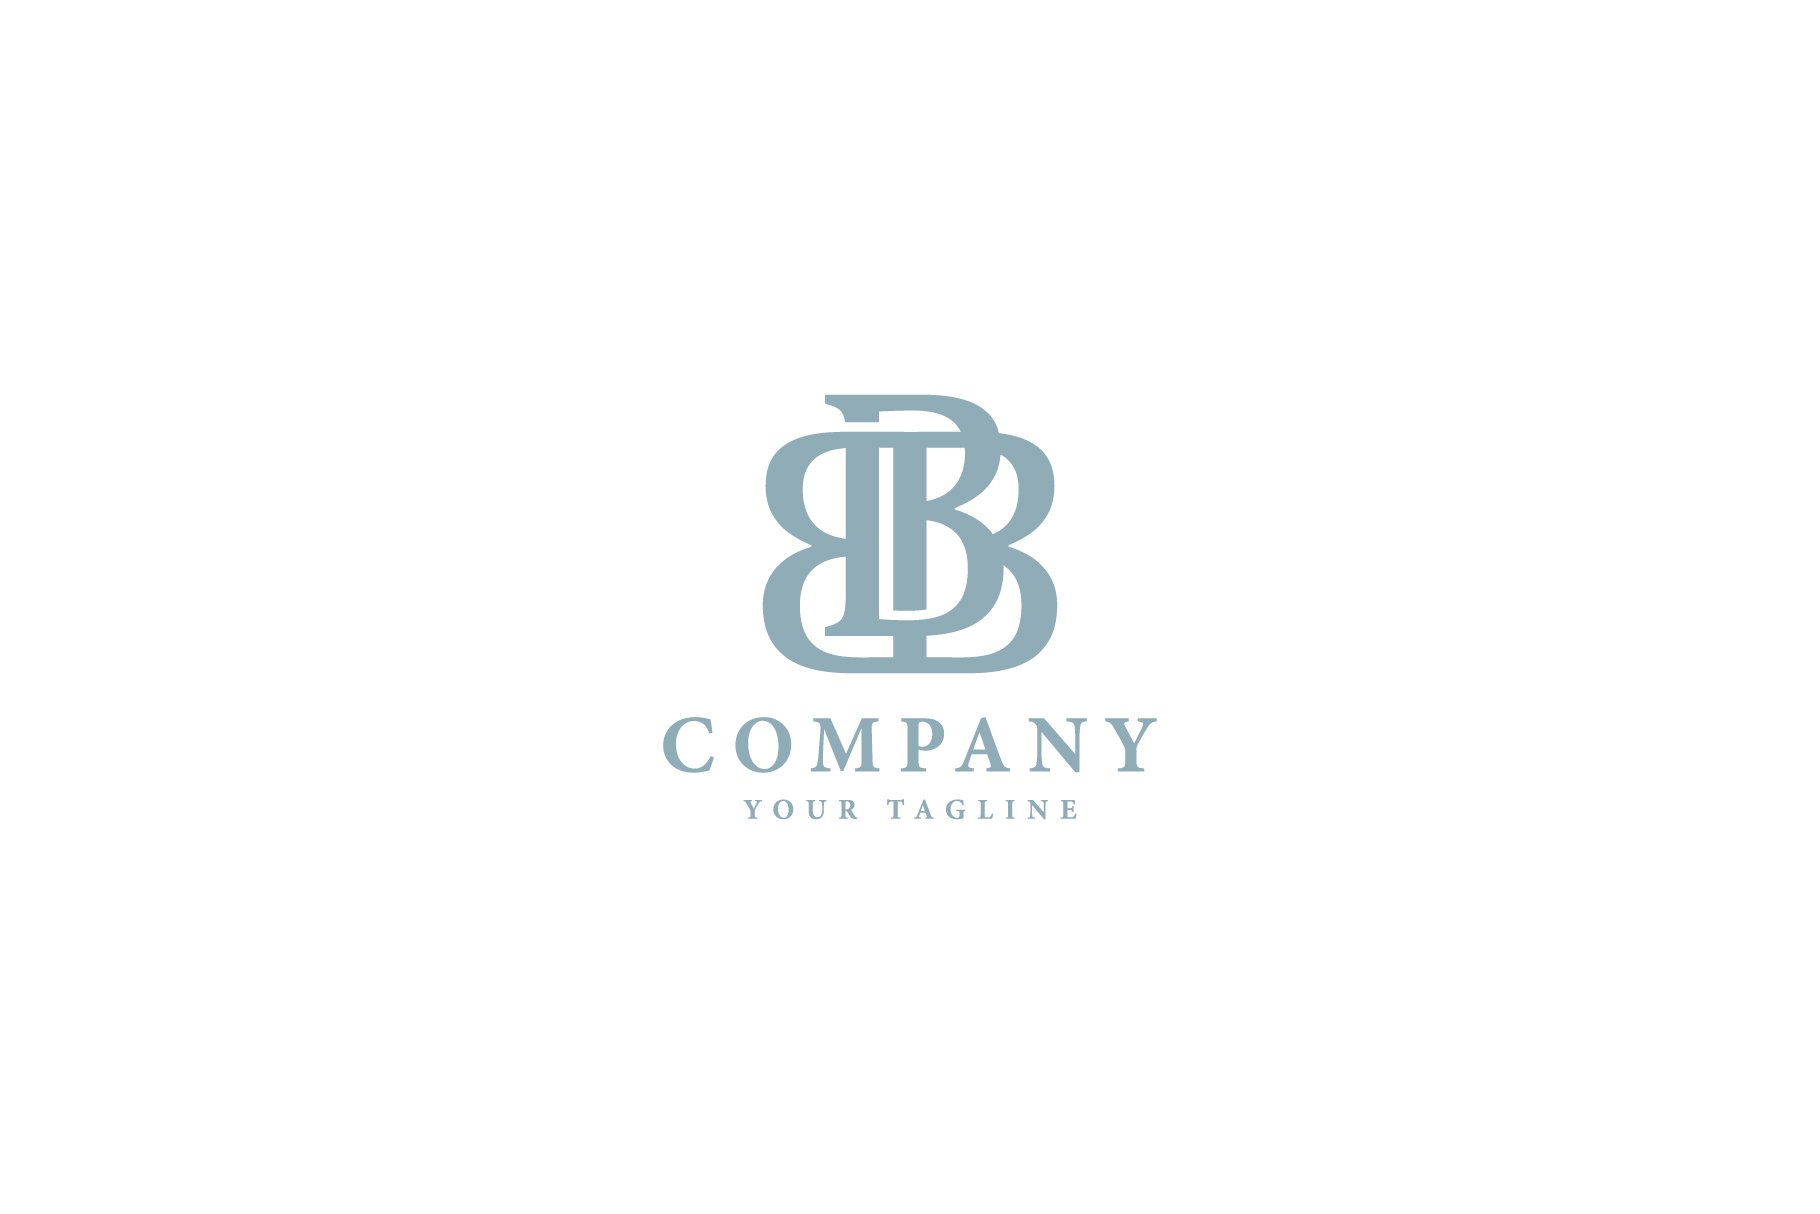 BBB Letter Mark Logo cover image.